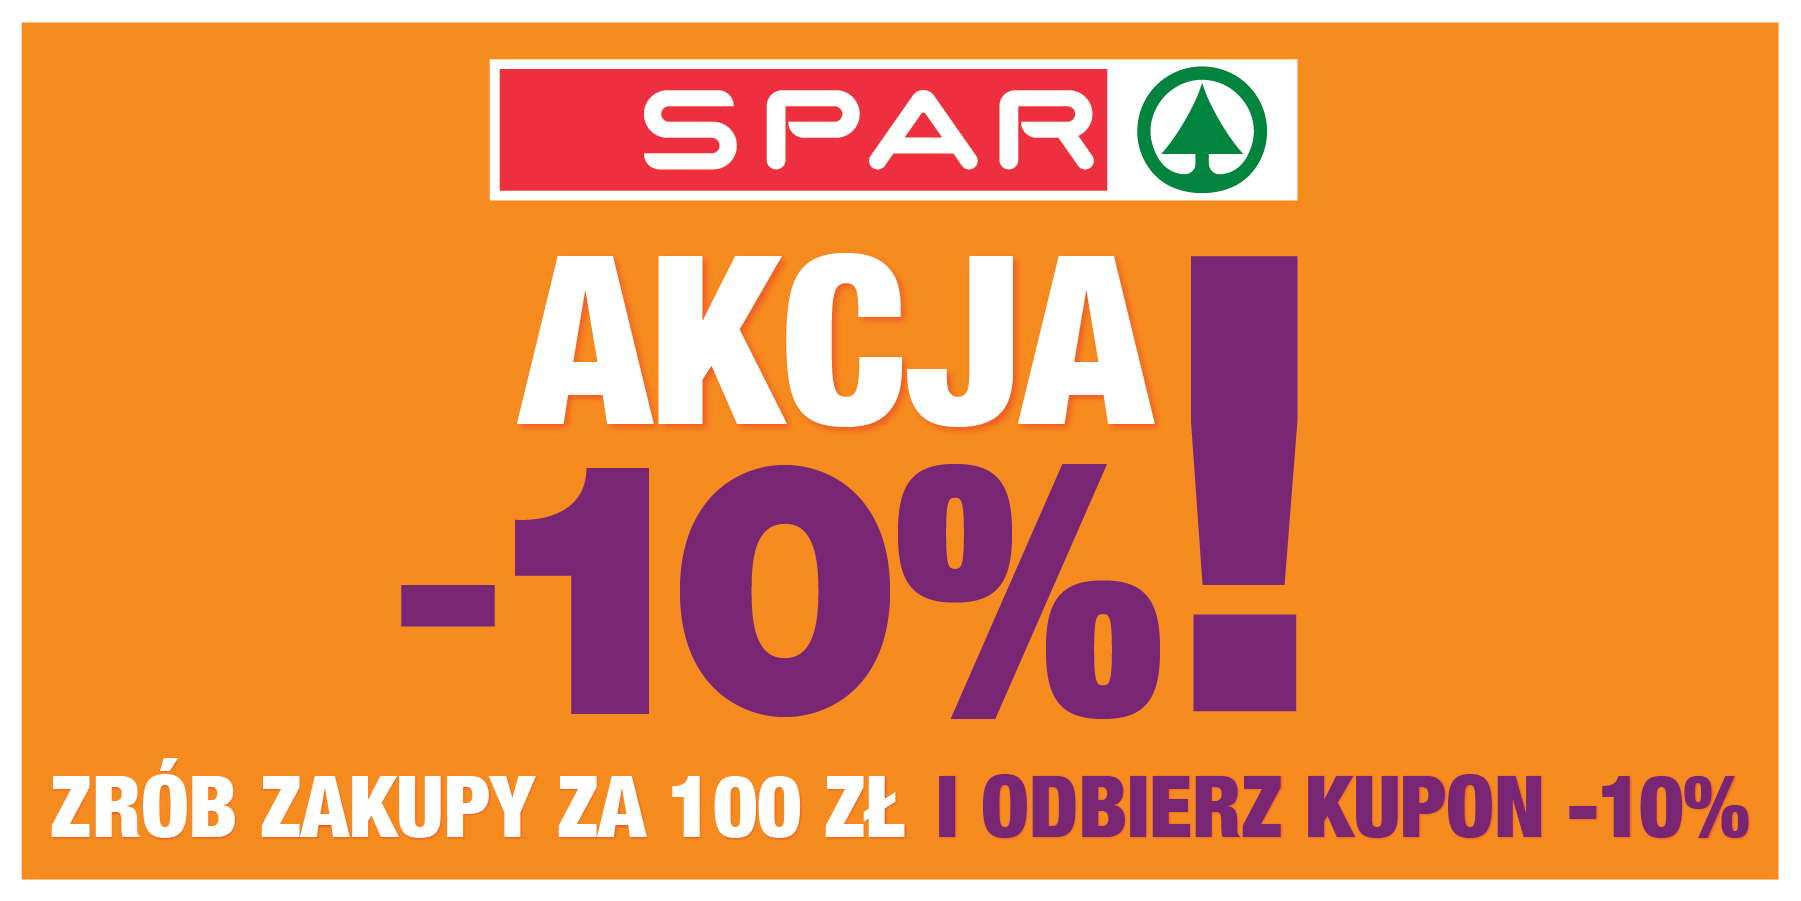 SPAR - akcja Kupon 10%